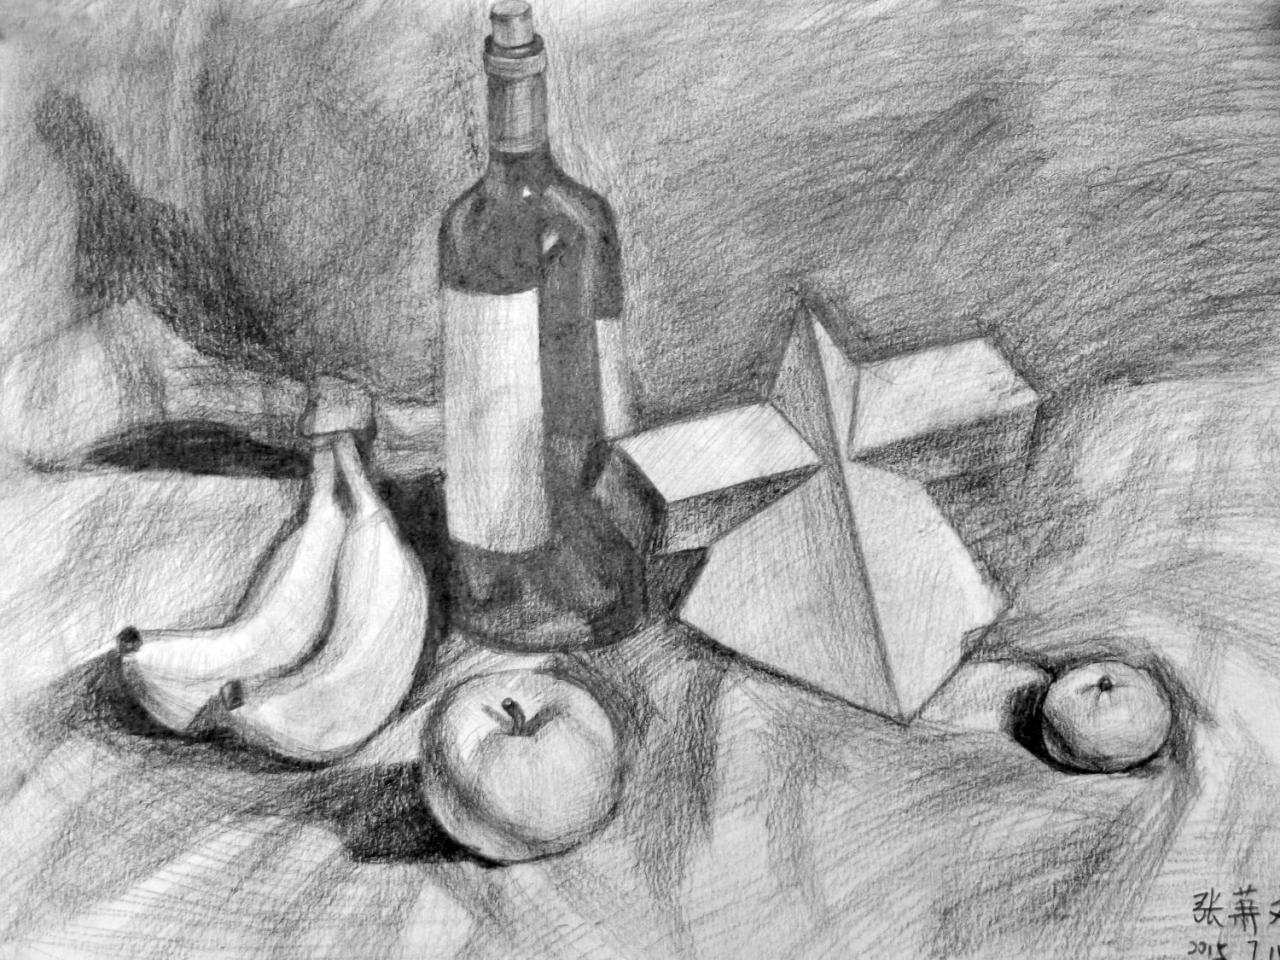 酒瓶、石膏几何体、香蕉、苹果 静物素描 张萧文画